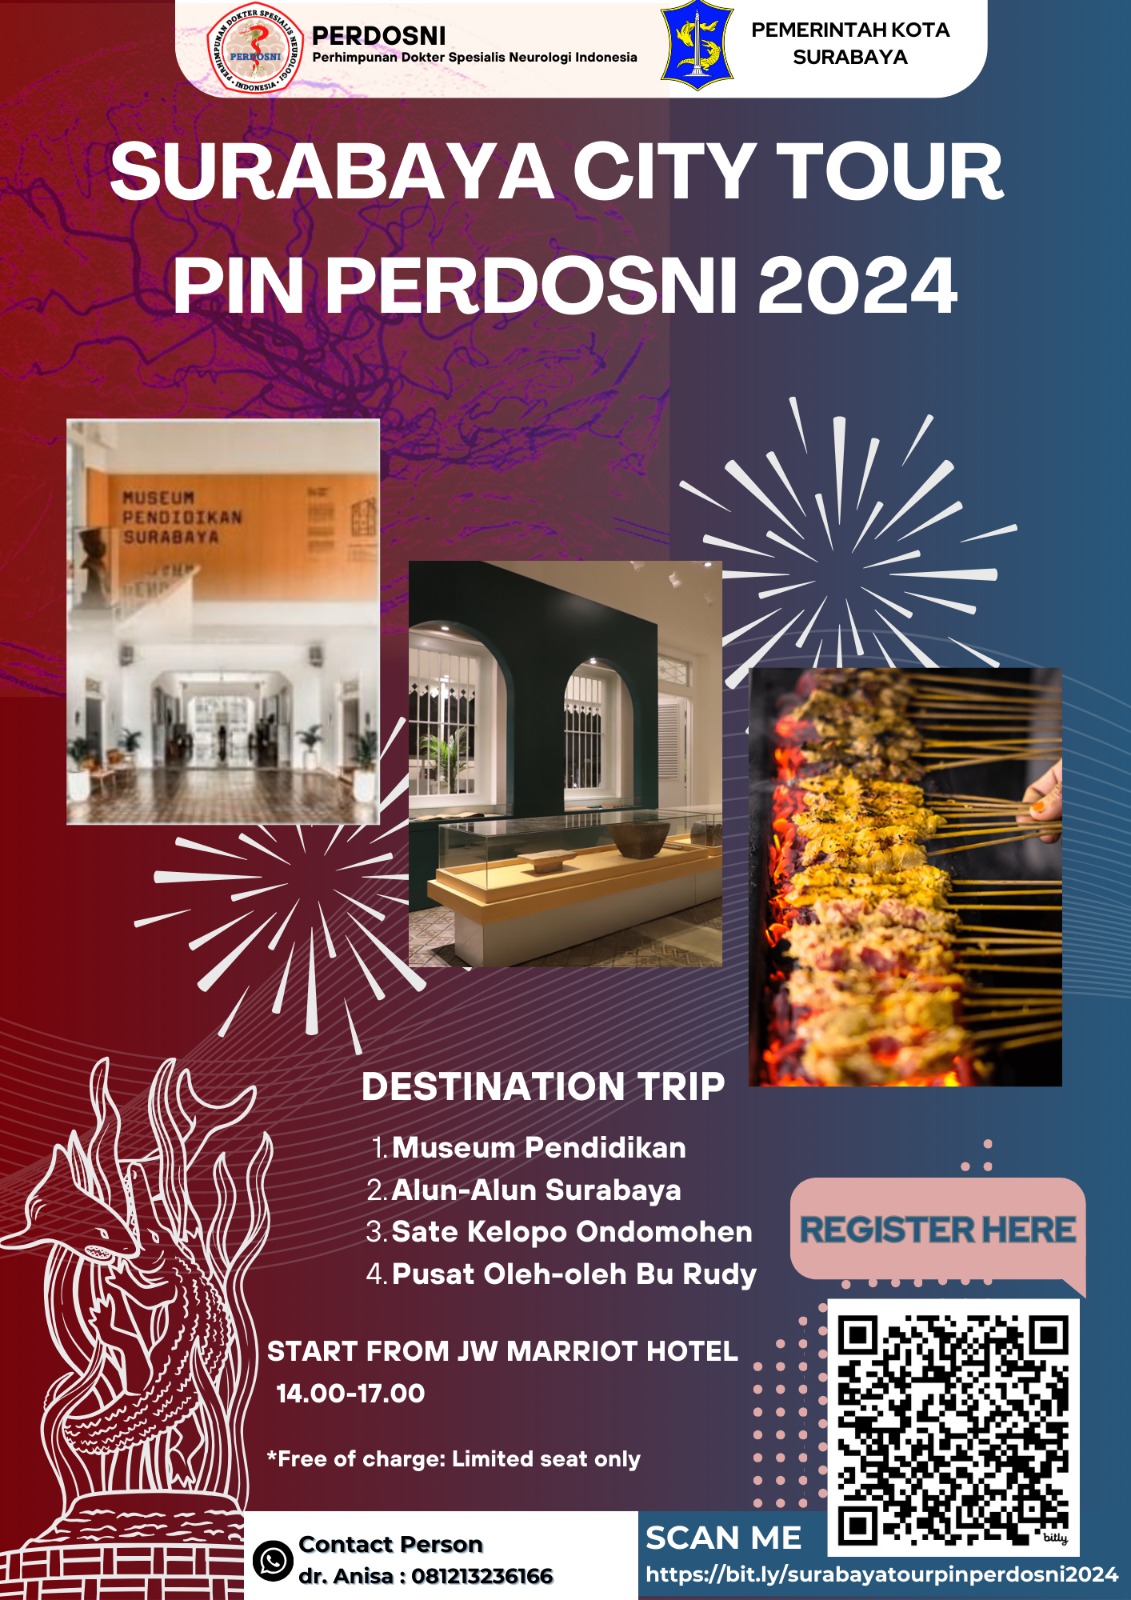 Surabaya-City-Tour-PIN-Perdosni-2024